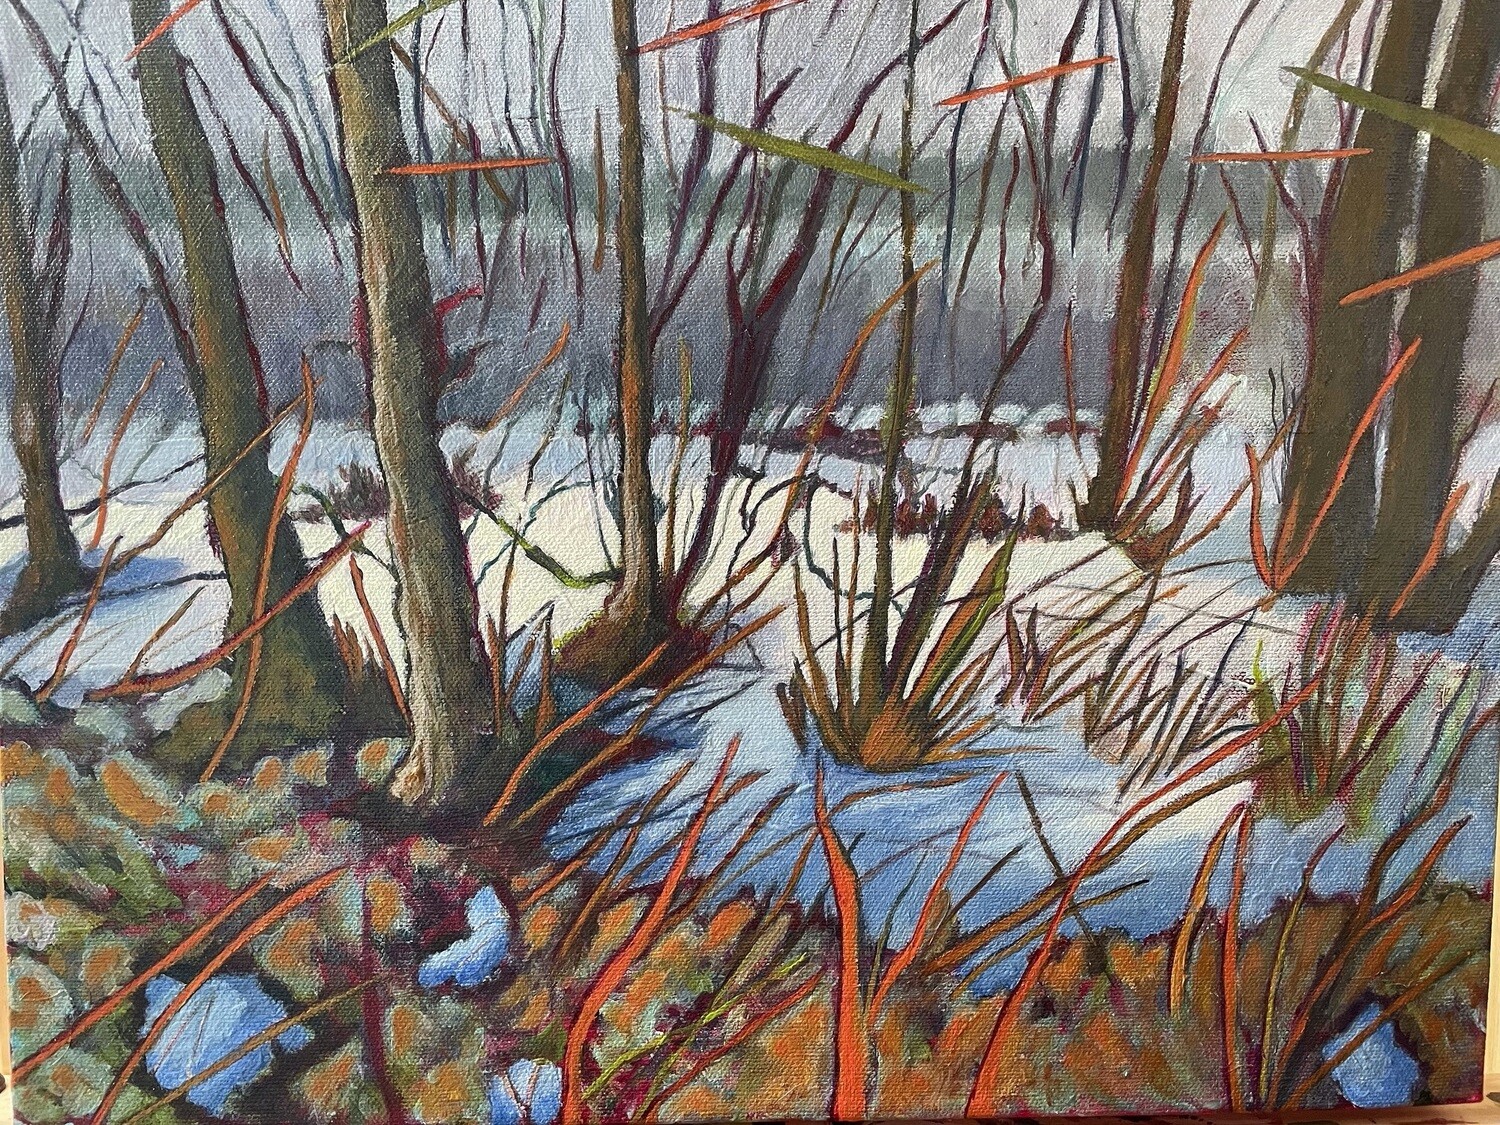 Winter Bog by Tassie Notar